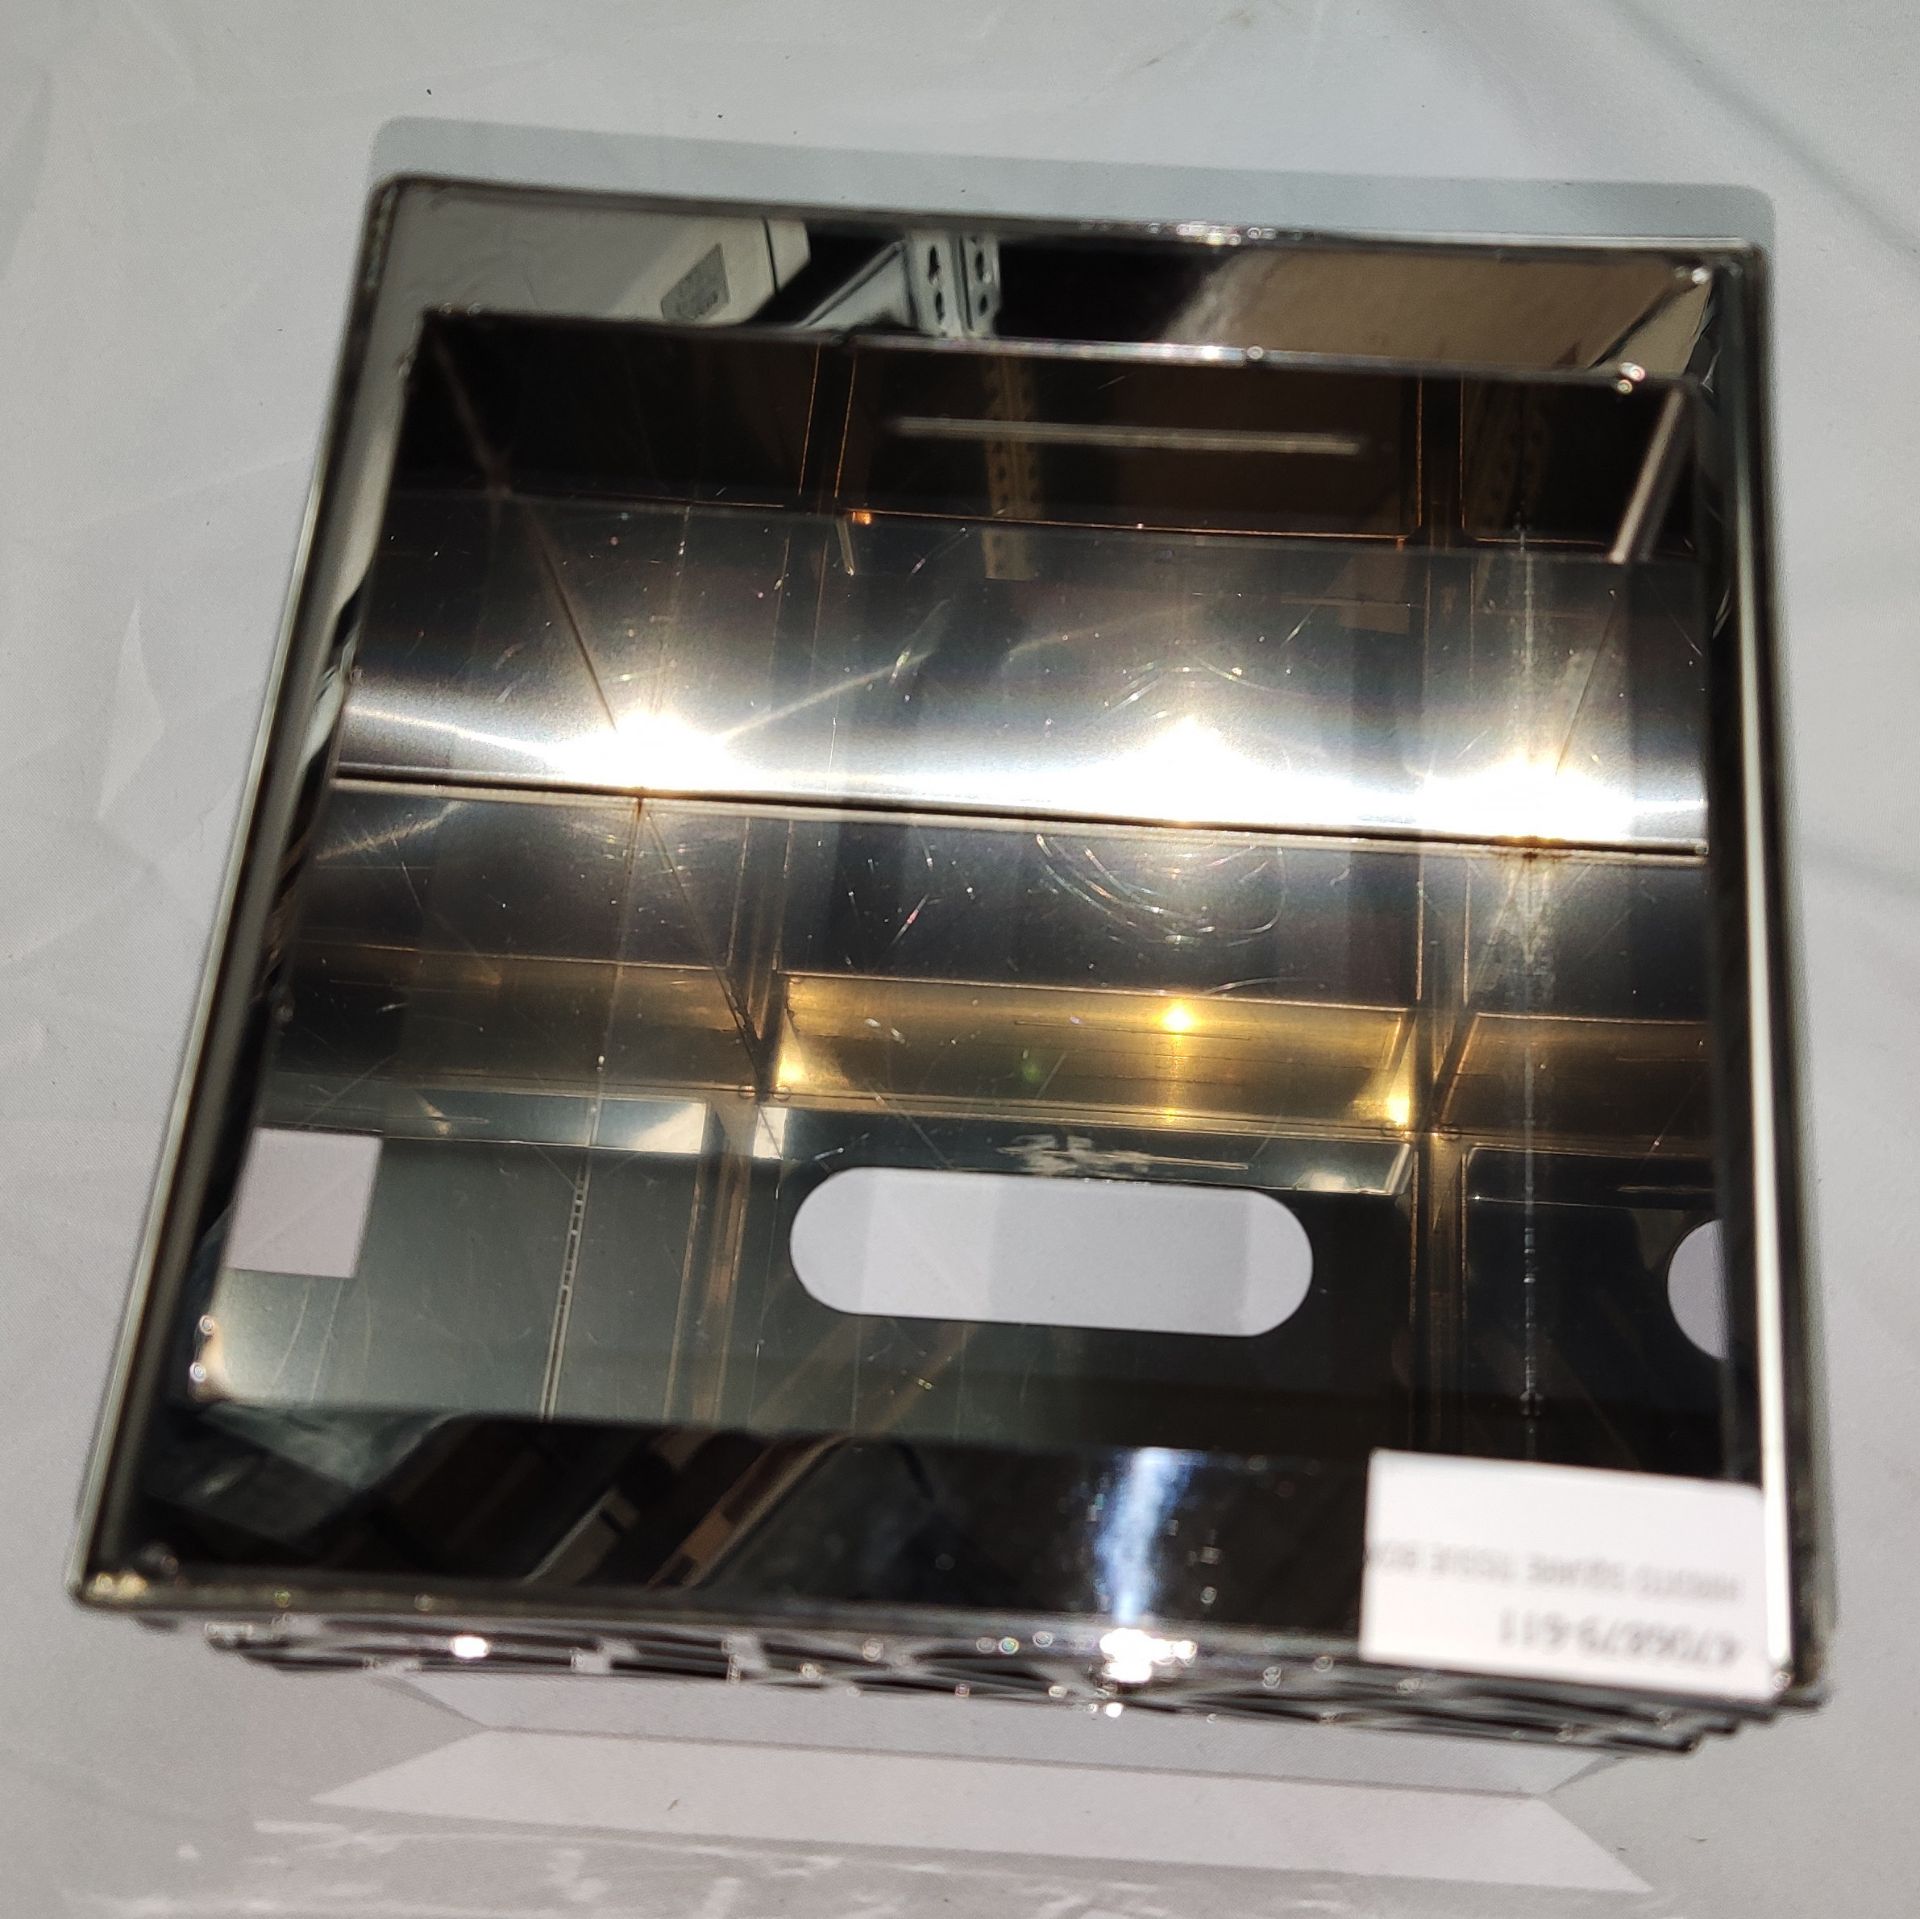 1 x VILLARI Hiroito Square Tissue Box - Chrome Plated - Boxed - Original RRP £529 - Ref: 6125321/ - Image 7 of 17